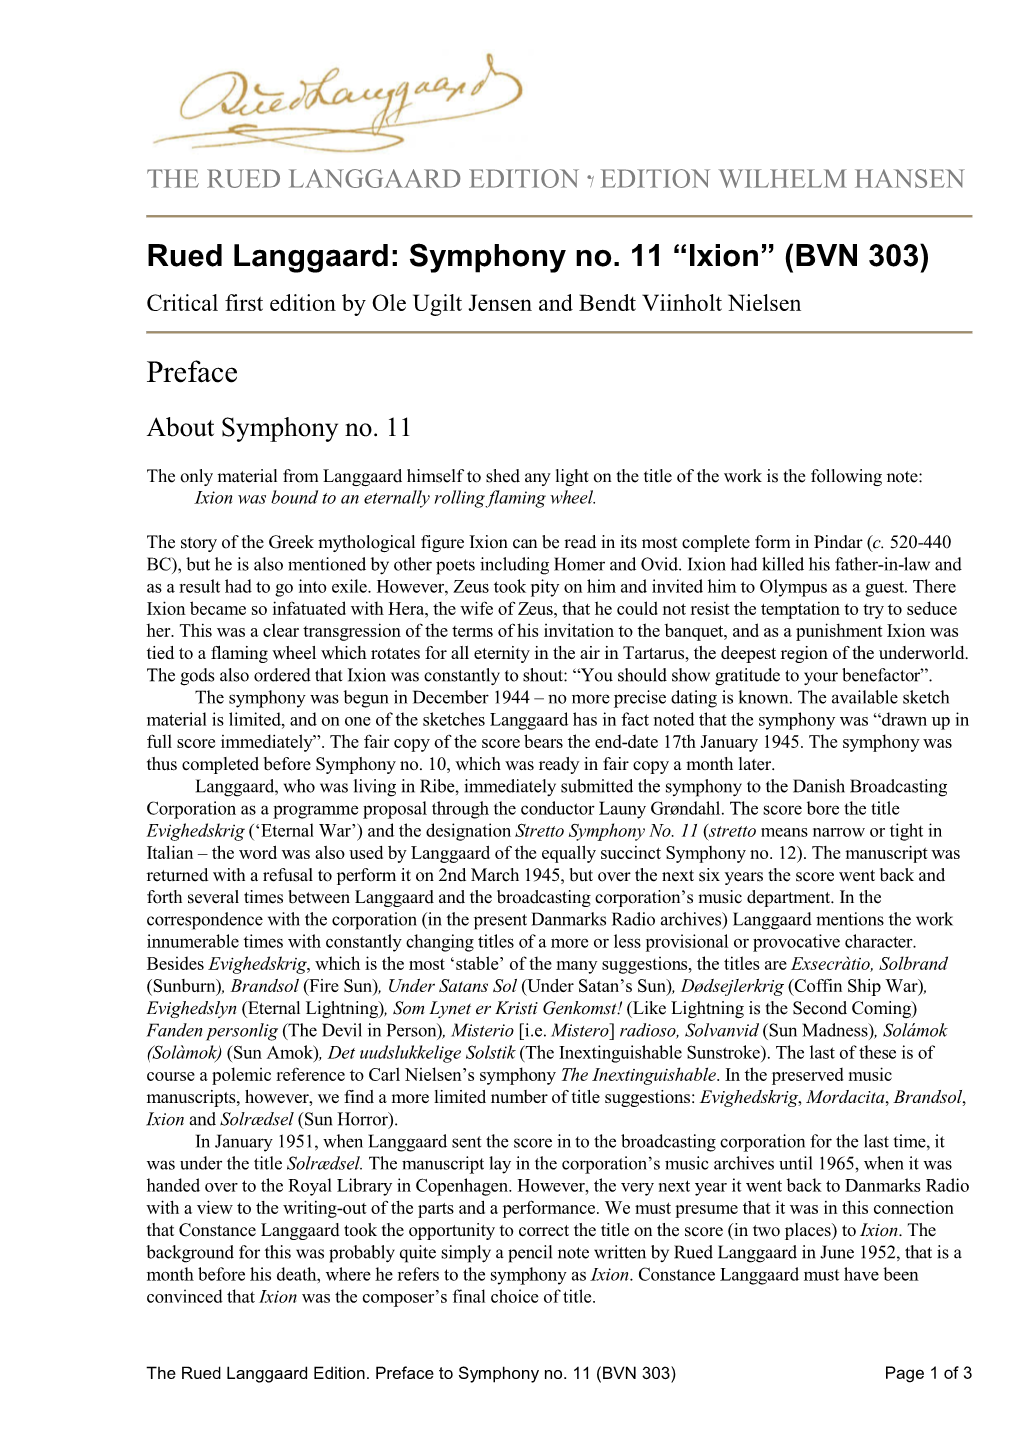 Symphony No. 11 “Ixion” (BVN 303) Preface